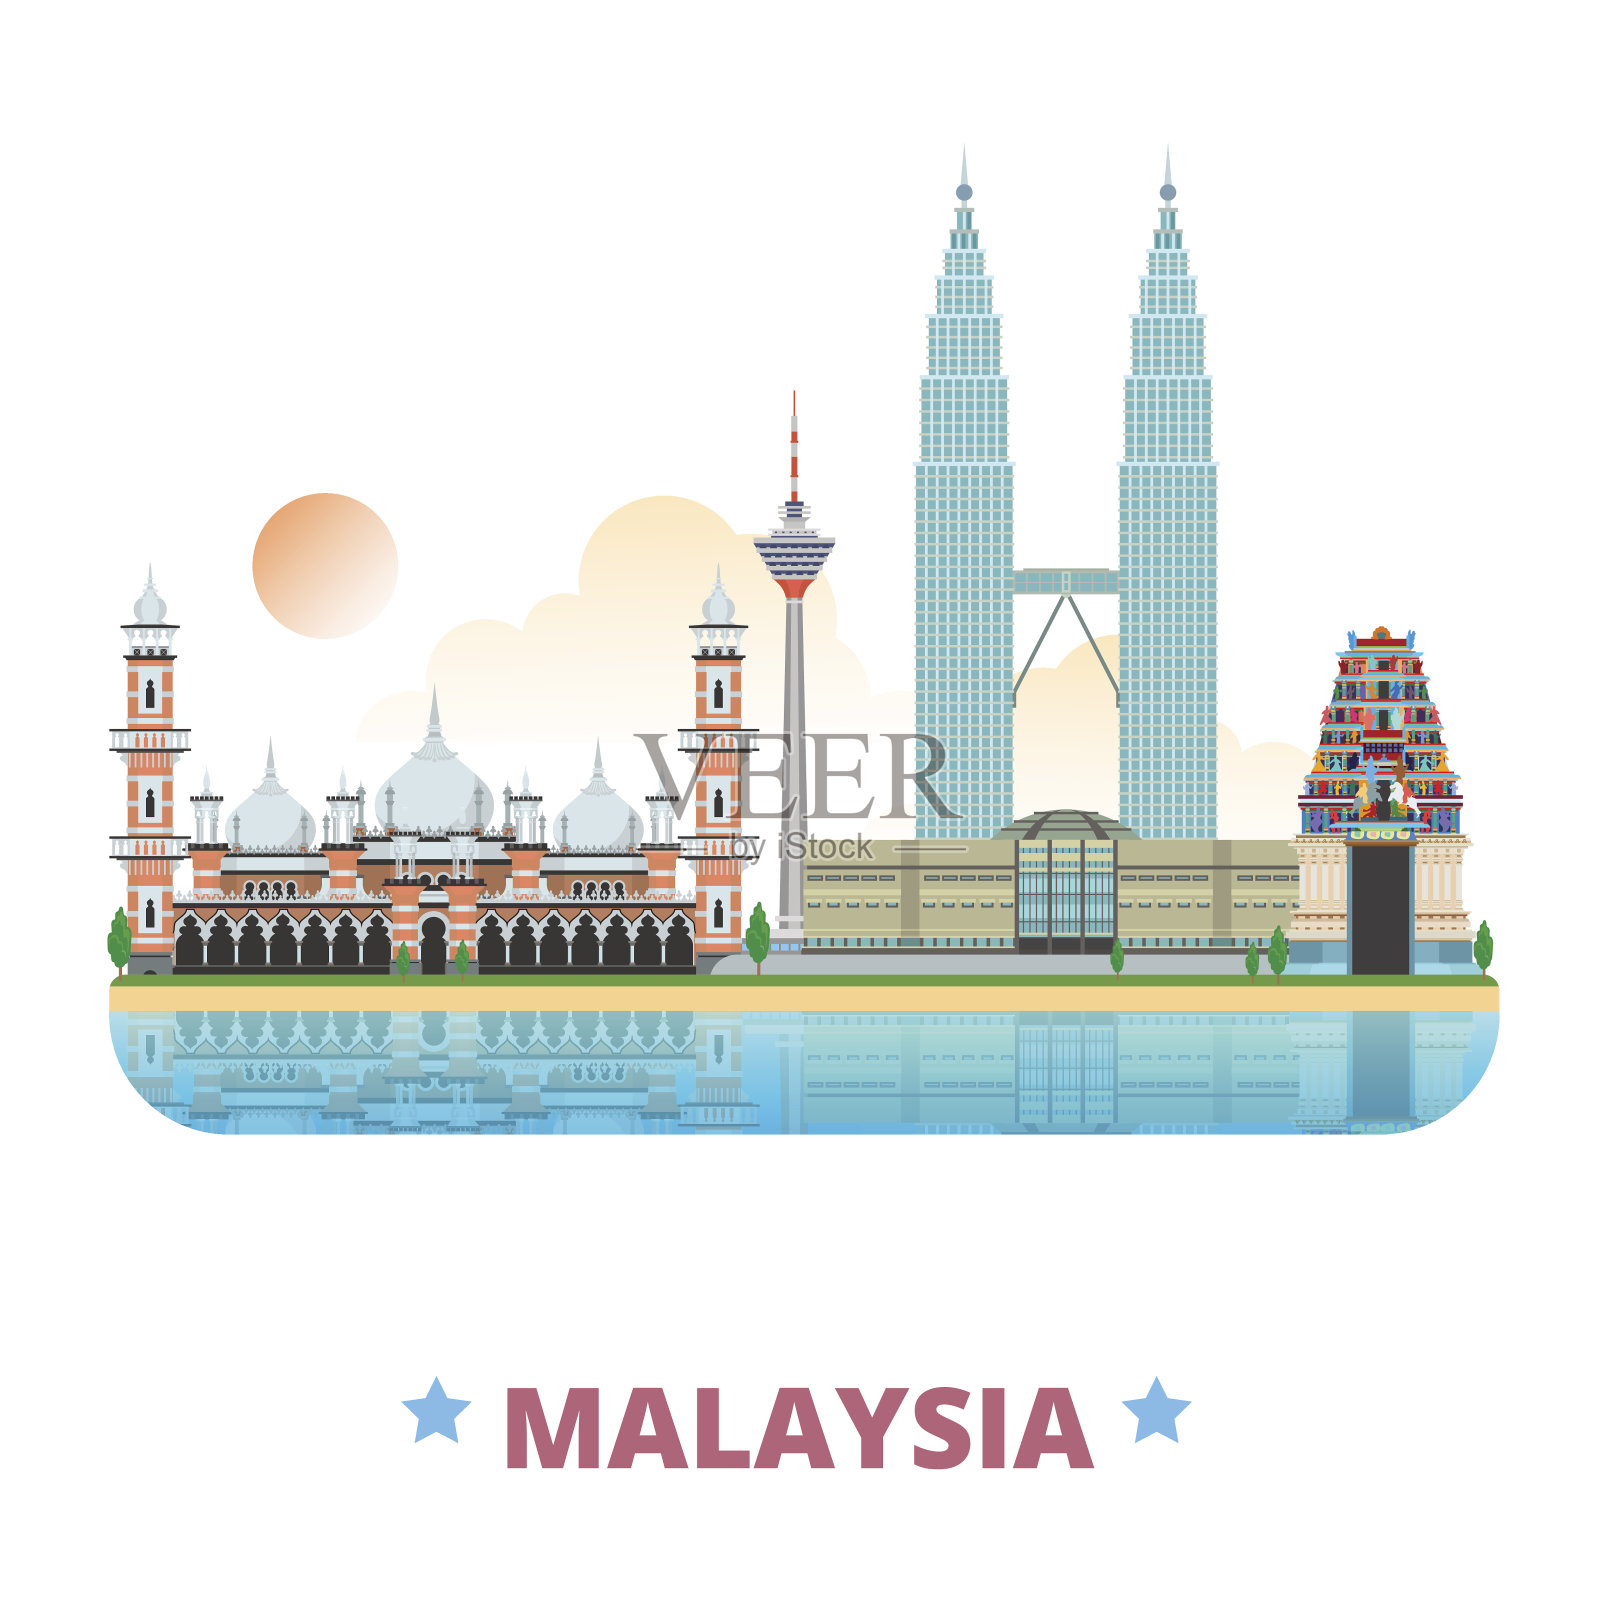 马来西亚国家设计模板。平面卡通风格的历史景观网络矢量插图。世界旅游亚洲收藏。马来西亚国家石油公司双子塔斯里玛哈马里安曼印度教寺庙雅米克清真寺吉隆坡塔。插画图片素材